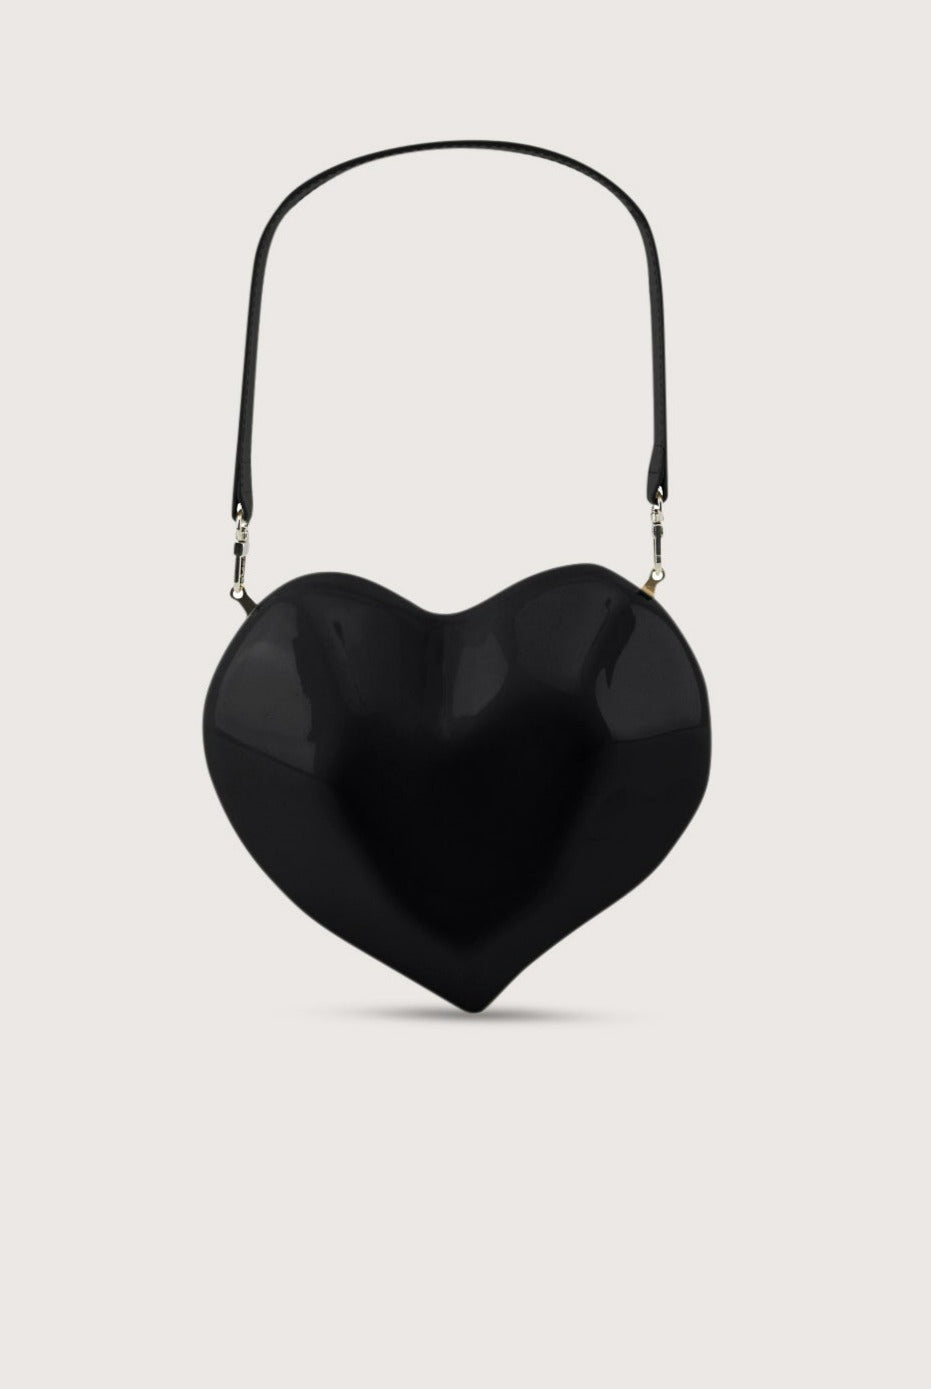 Heart Bag Moschino -  Sweden